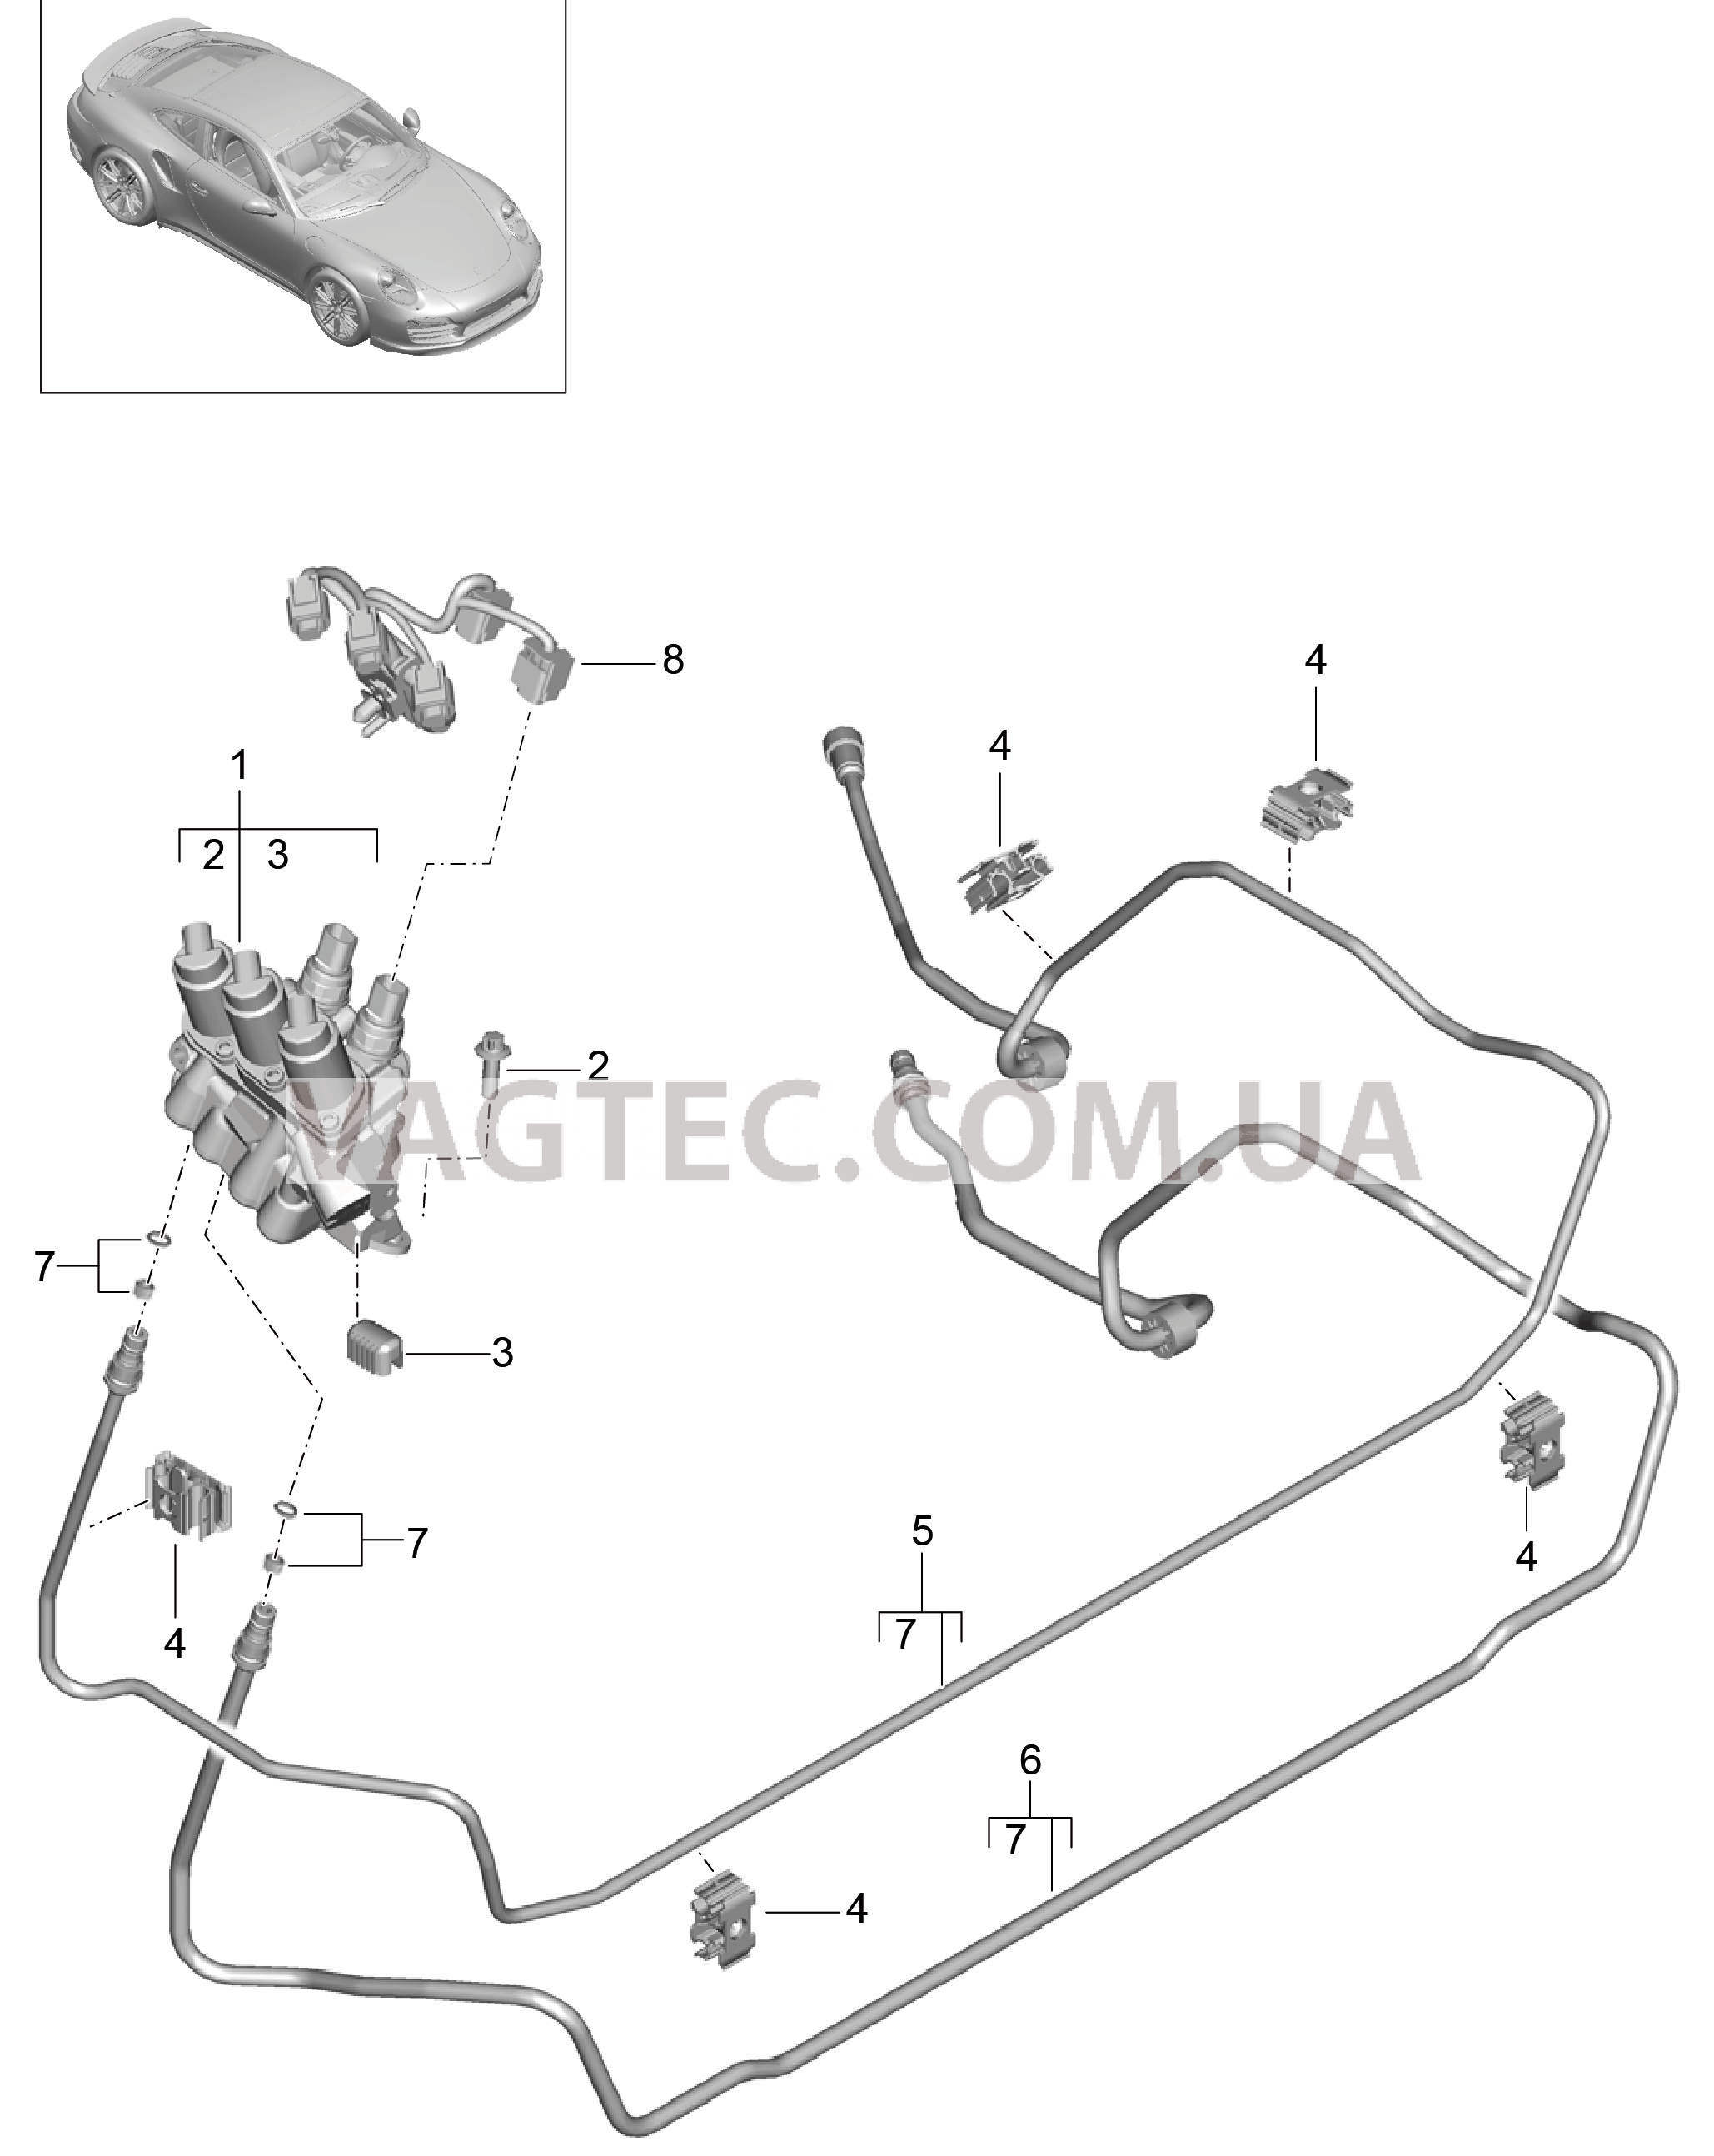 402-022 Линии, Блок клапанов, Передняя часть кузова, PDCC
						
						I031/352 для PORSCHE Porsche991Turbo 2014-2017